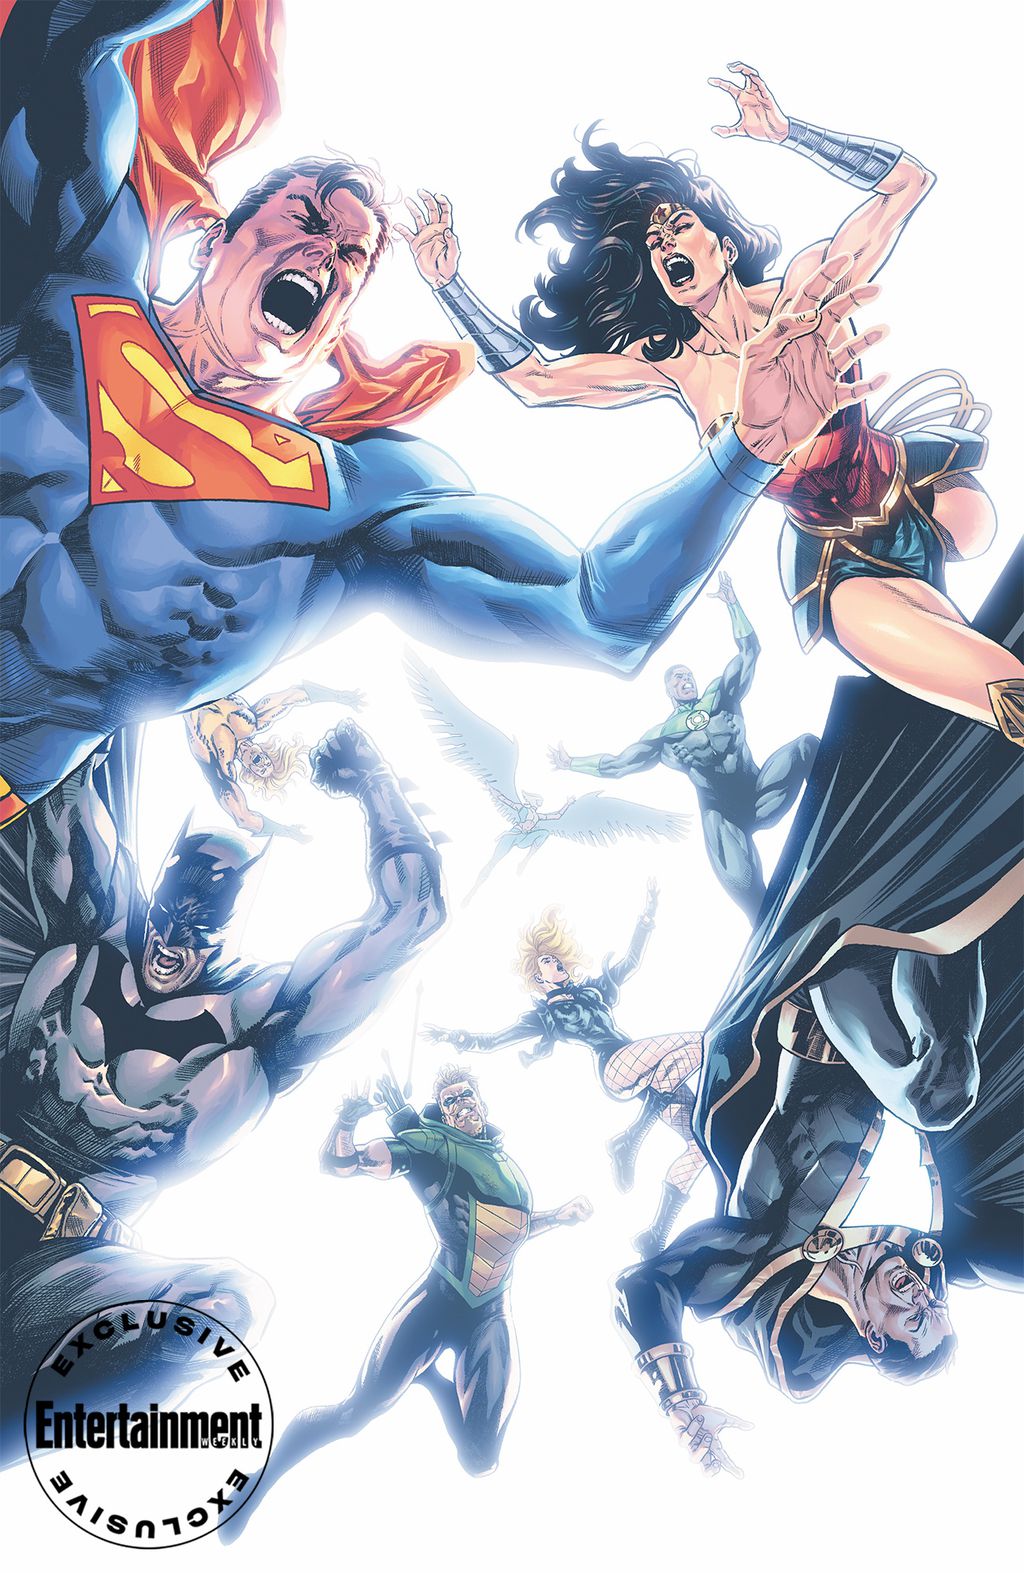 Capa principal de Justice League nº 75 por Daniel Sampere e Alejandro Sánchez (Imagem: Reprodução/Entertainment Weekly)